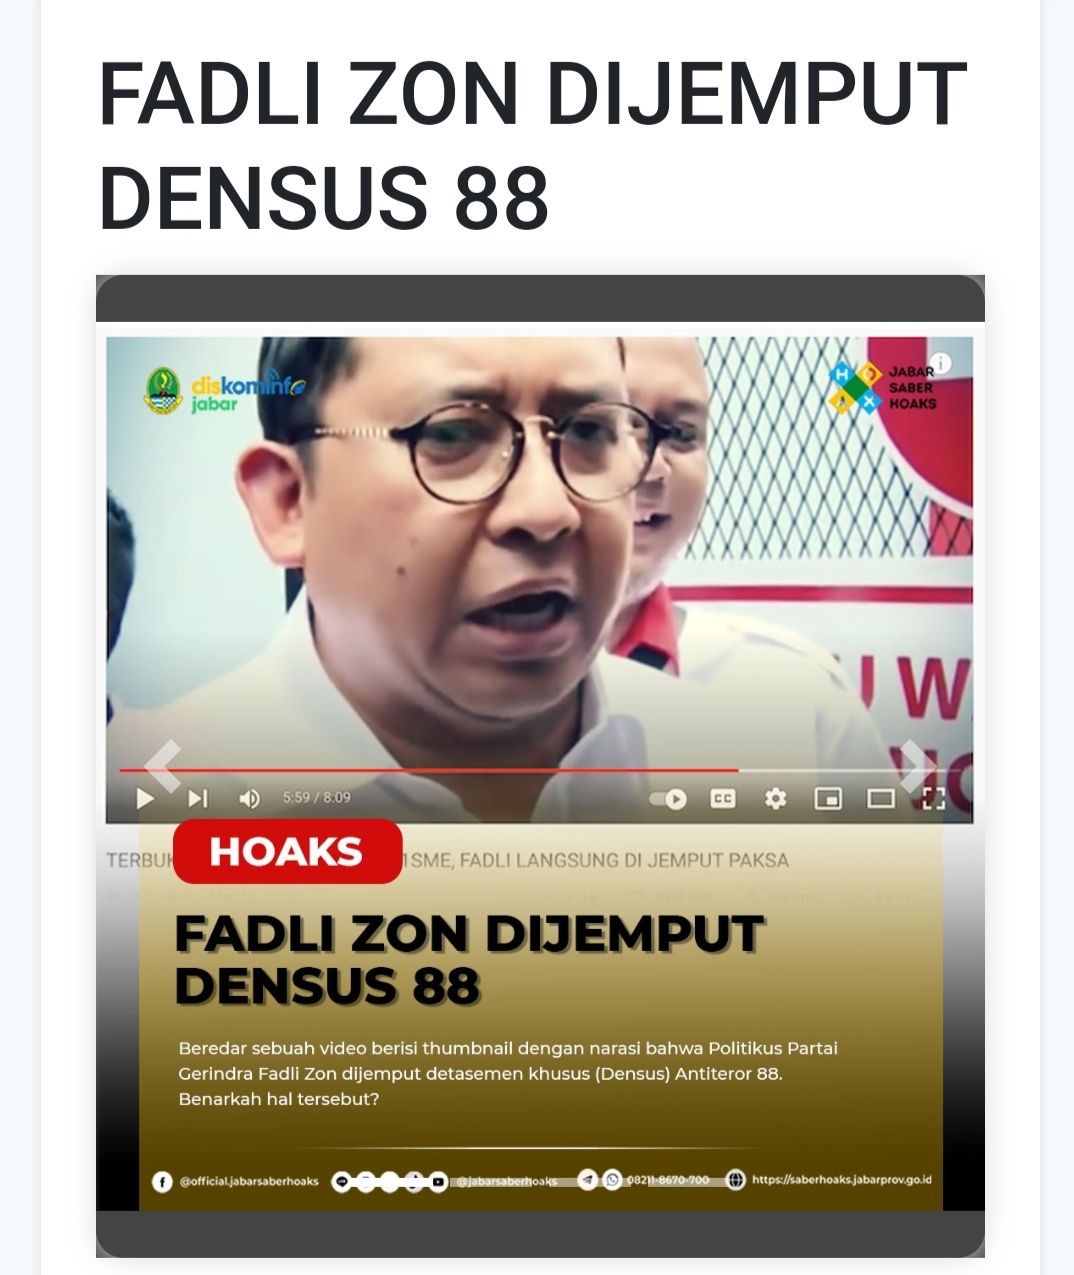 Fadli Zon Dijemput Paksa Deensus 88.